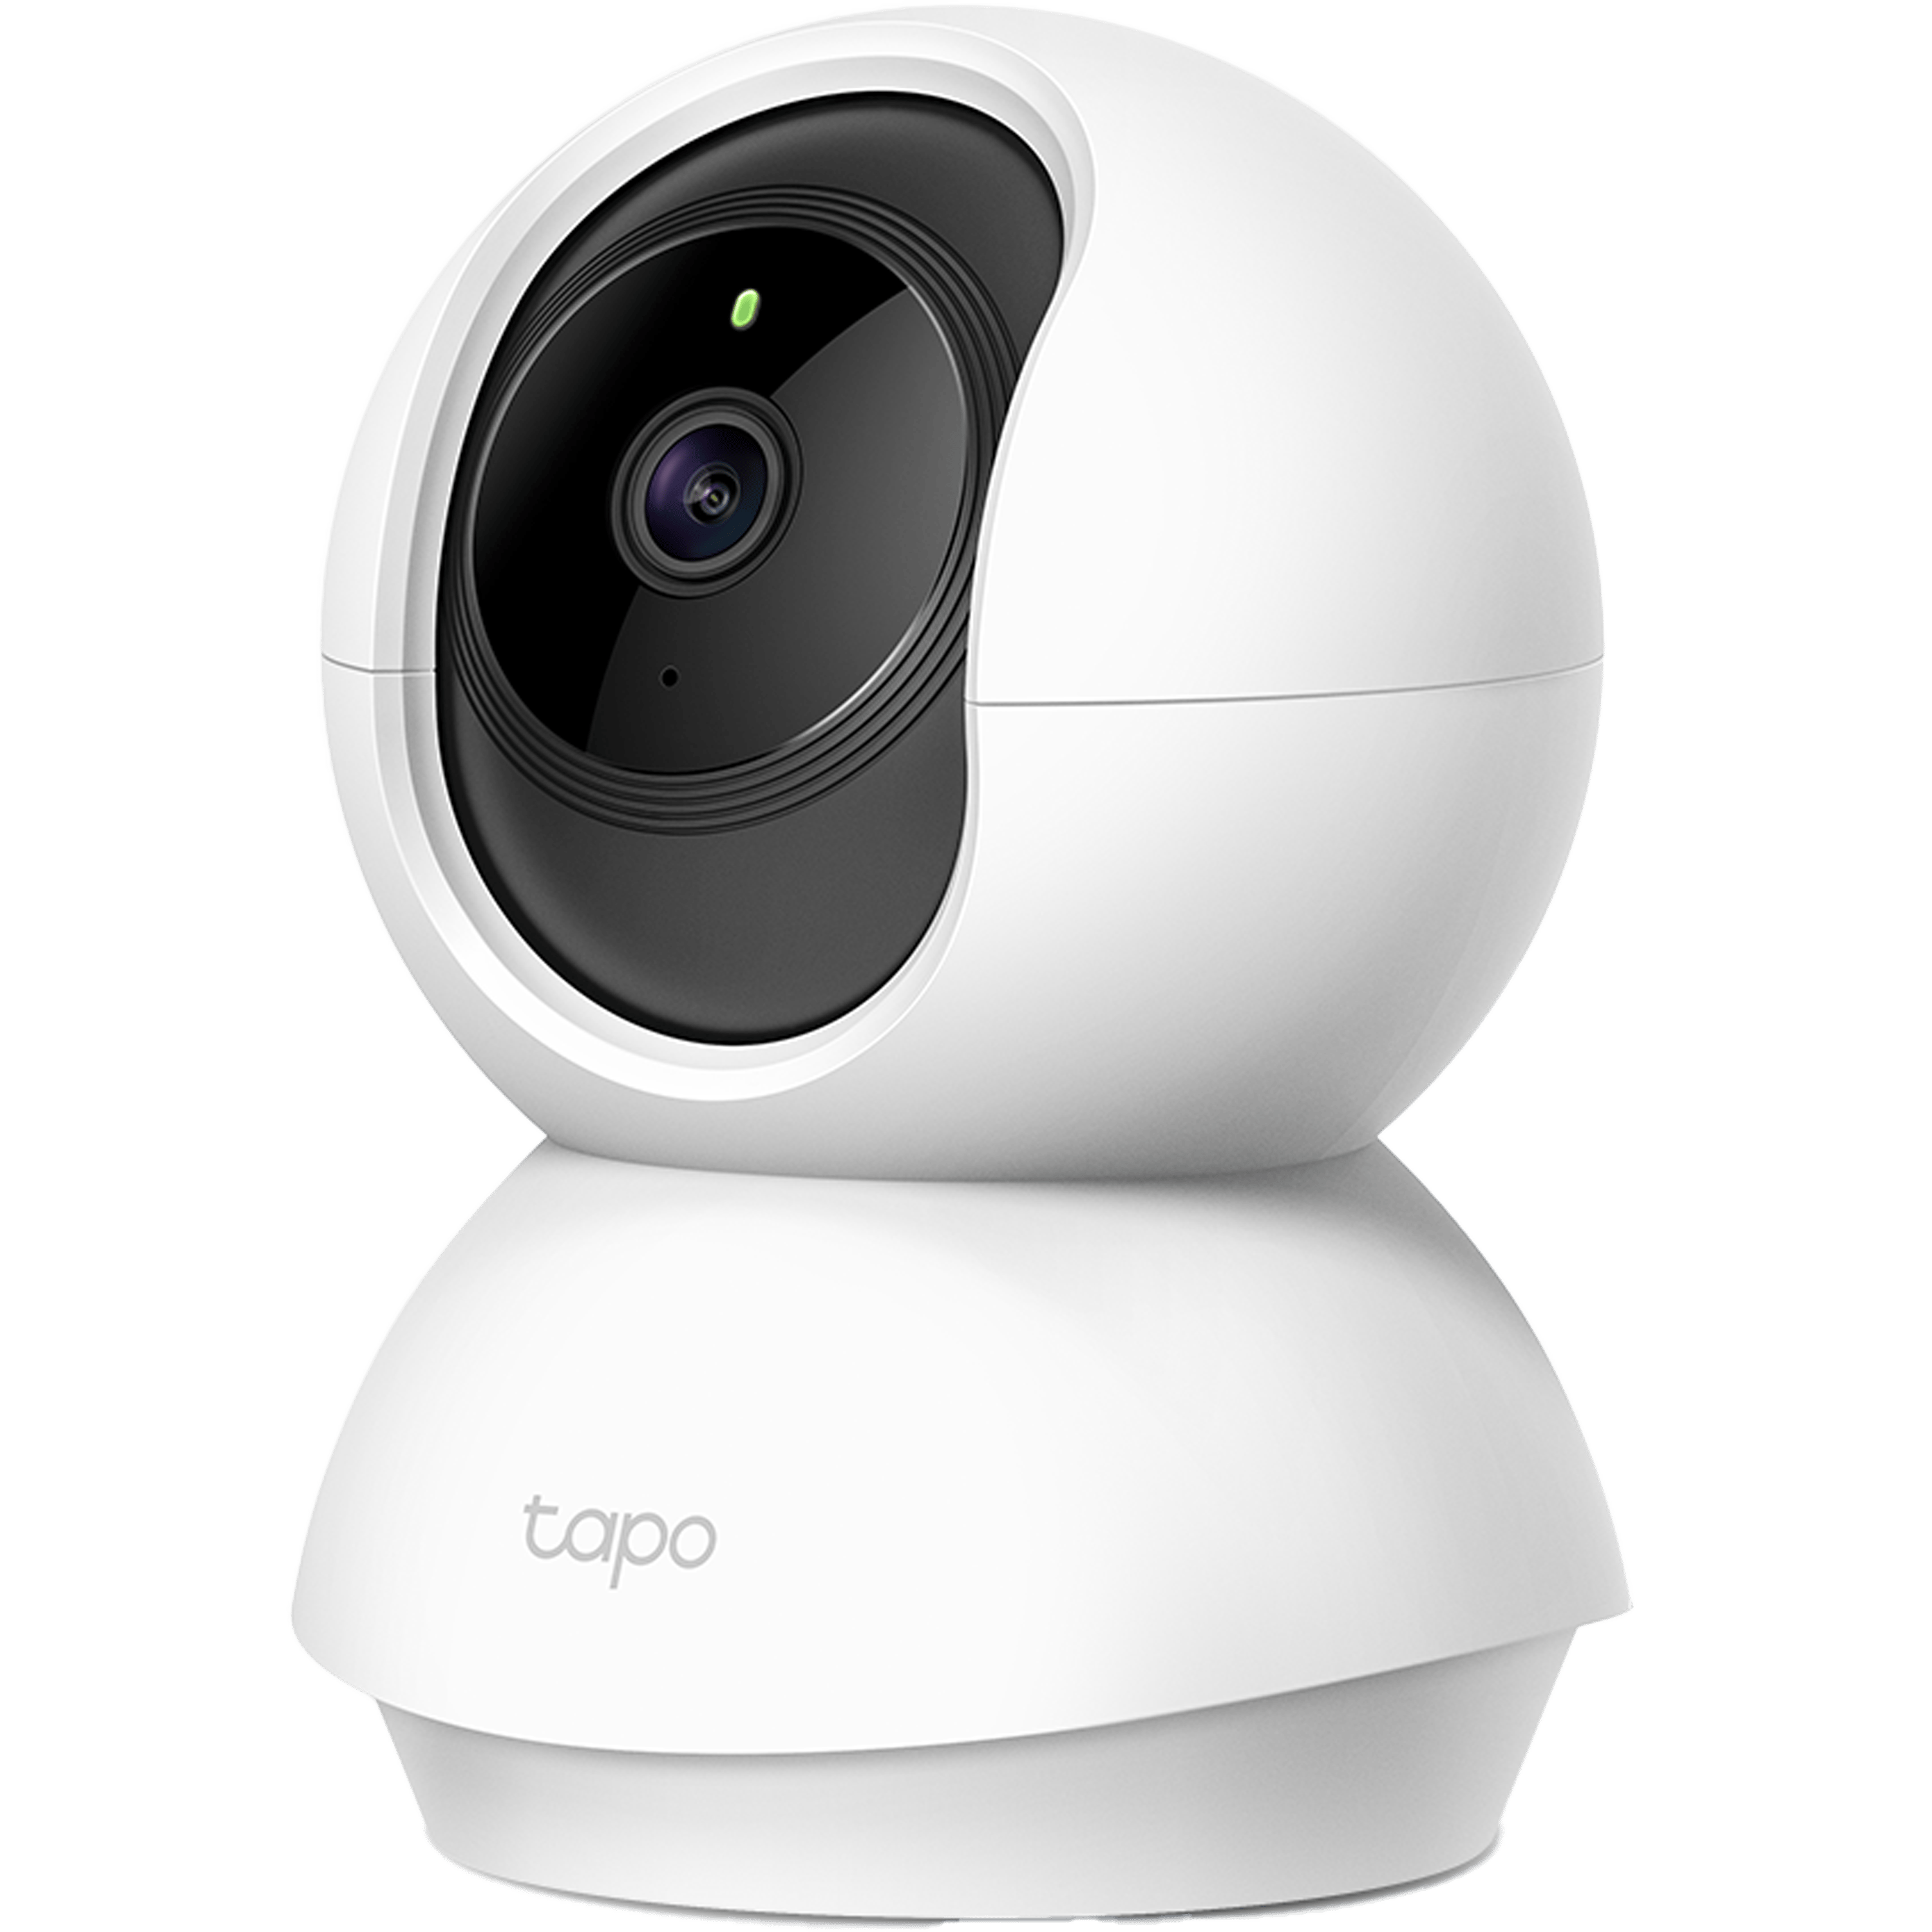 كاميرا אבטחה חכמה לבית TP-Link Tapo C200 WiFi 1080P - בلون أبيض ضمان ثلاث سنوات من المستورد الرسمي